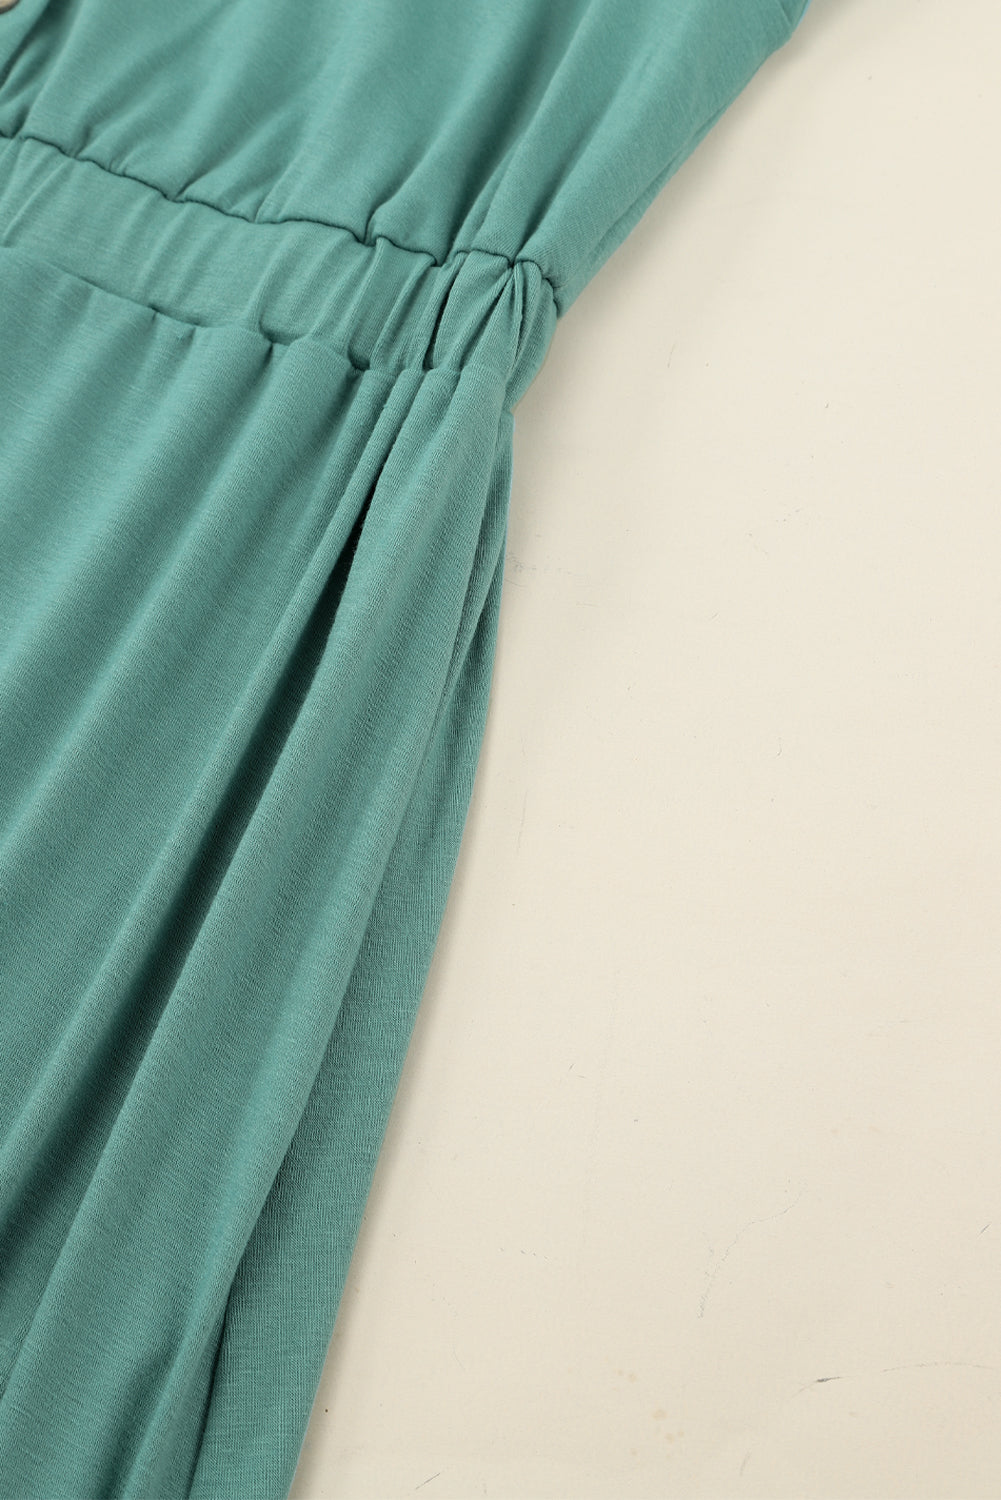 Green Button Up High Waist Long Sleeve Dress